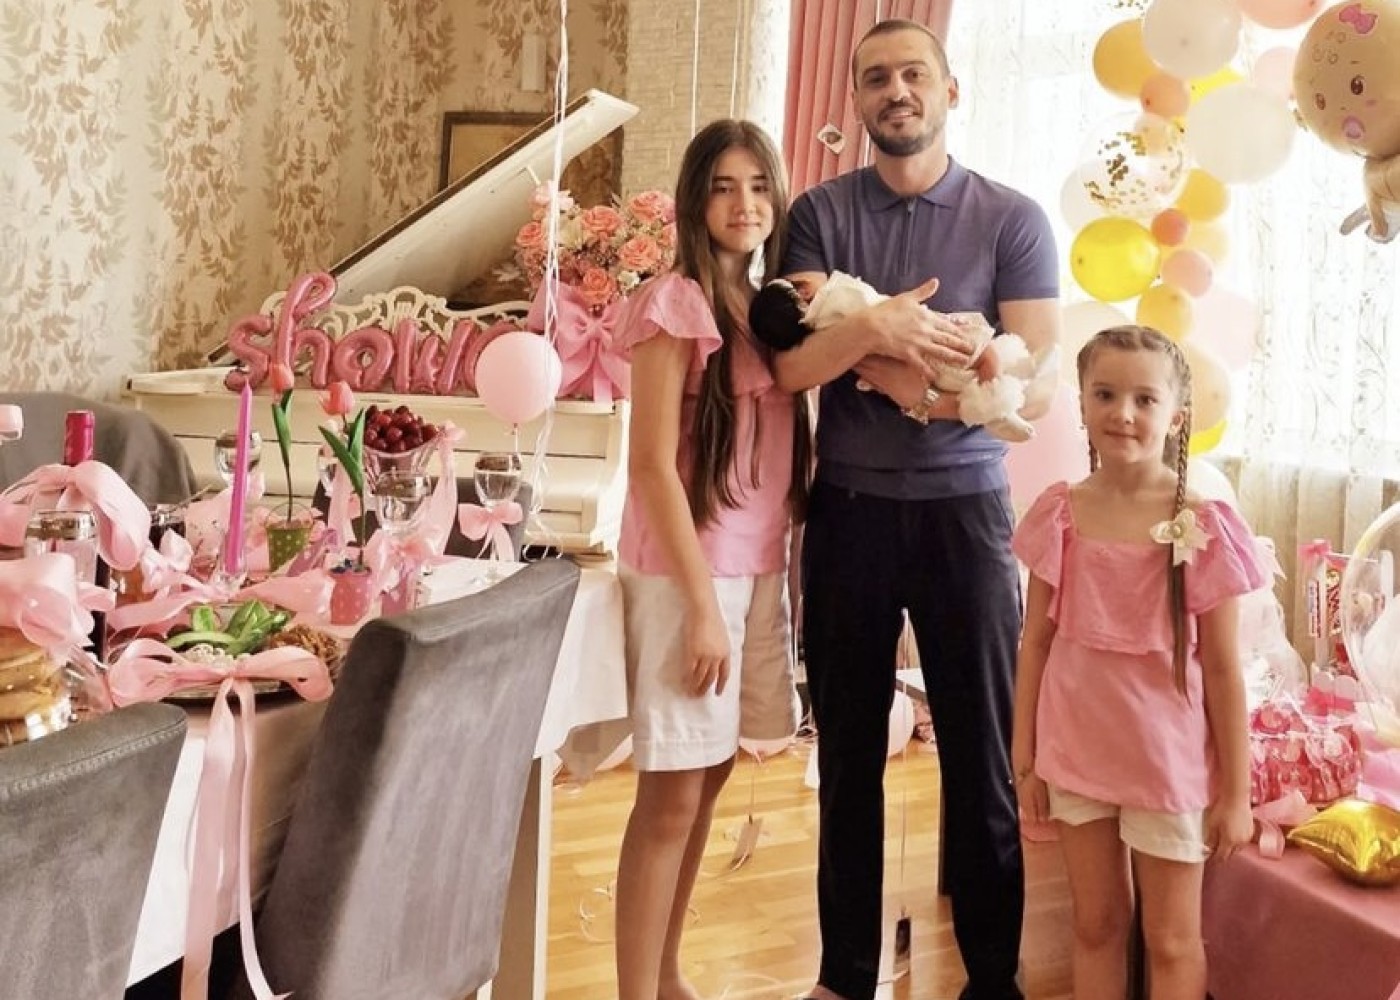 Emil Bədəlov yeni doğulan qızı iləfotosunu paylaşdı